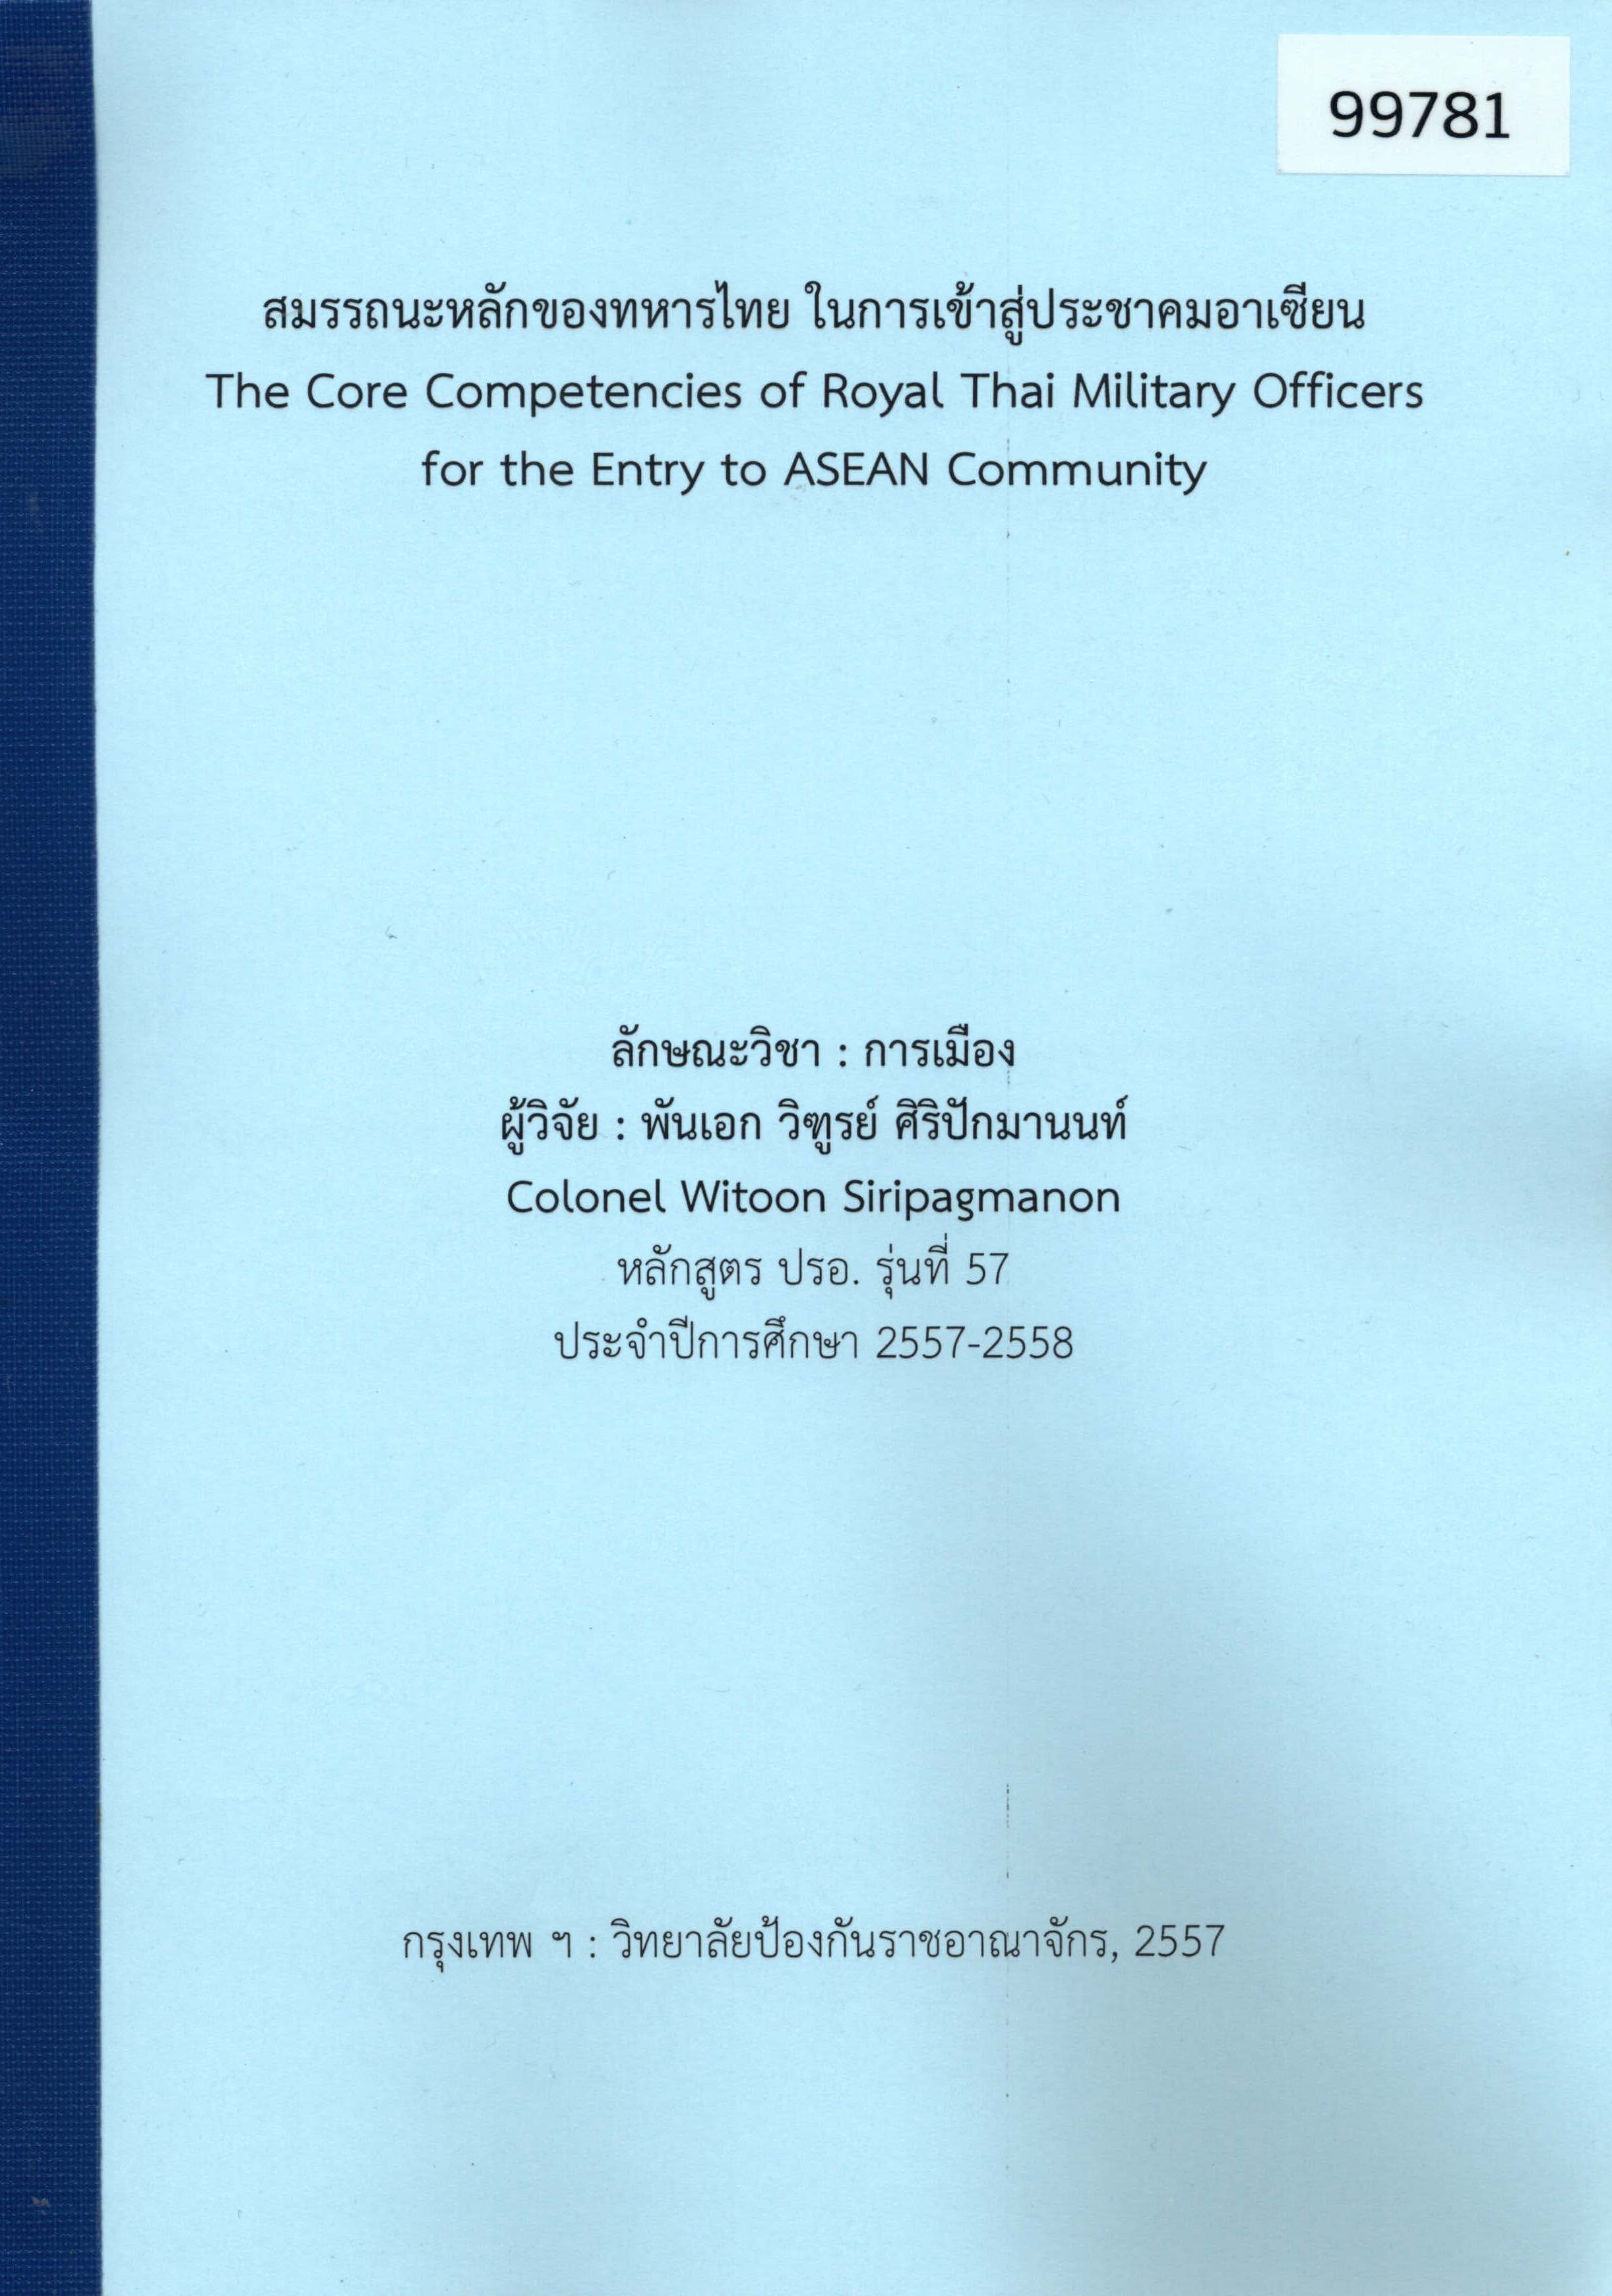 สมรรถนะหลักของทหารไทย ในการเข้าสู่ประชาคมอาเซียน